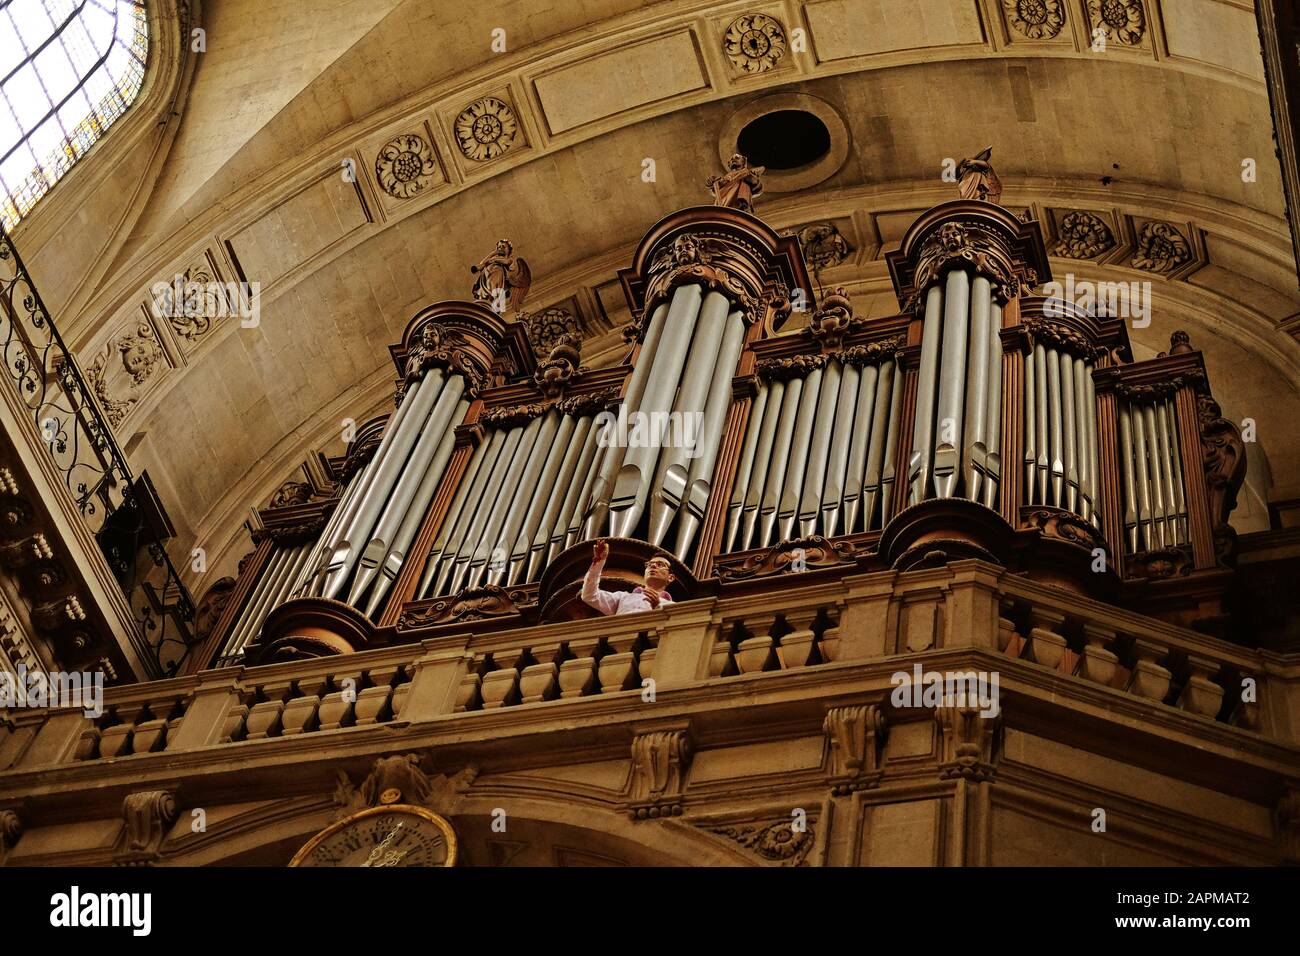 Le grand orgue tribune, le loft d'orgue et organiste à la répétition, Paroisse Saint-Paul Saint-Louis, lieu de culte catholique romaine du XVIIe siècle à Paris Banque D'Images